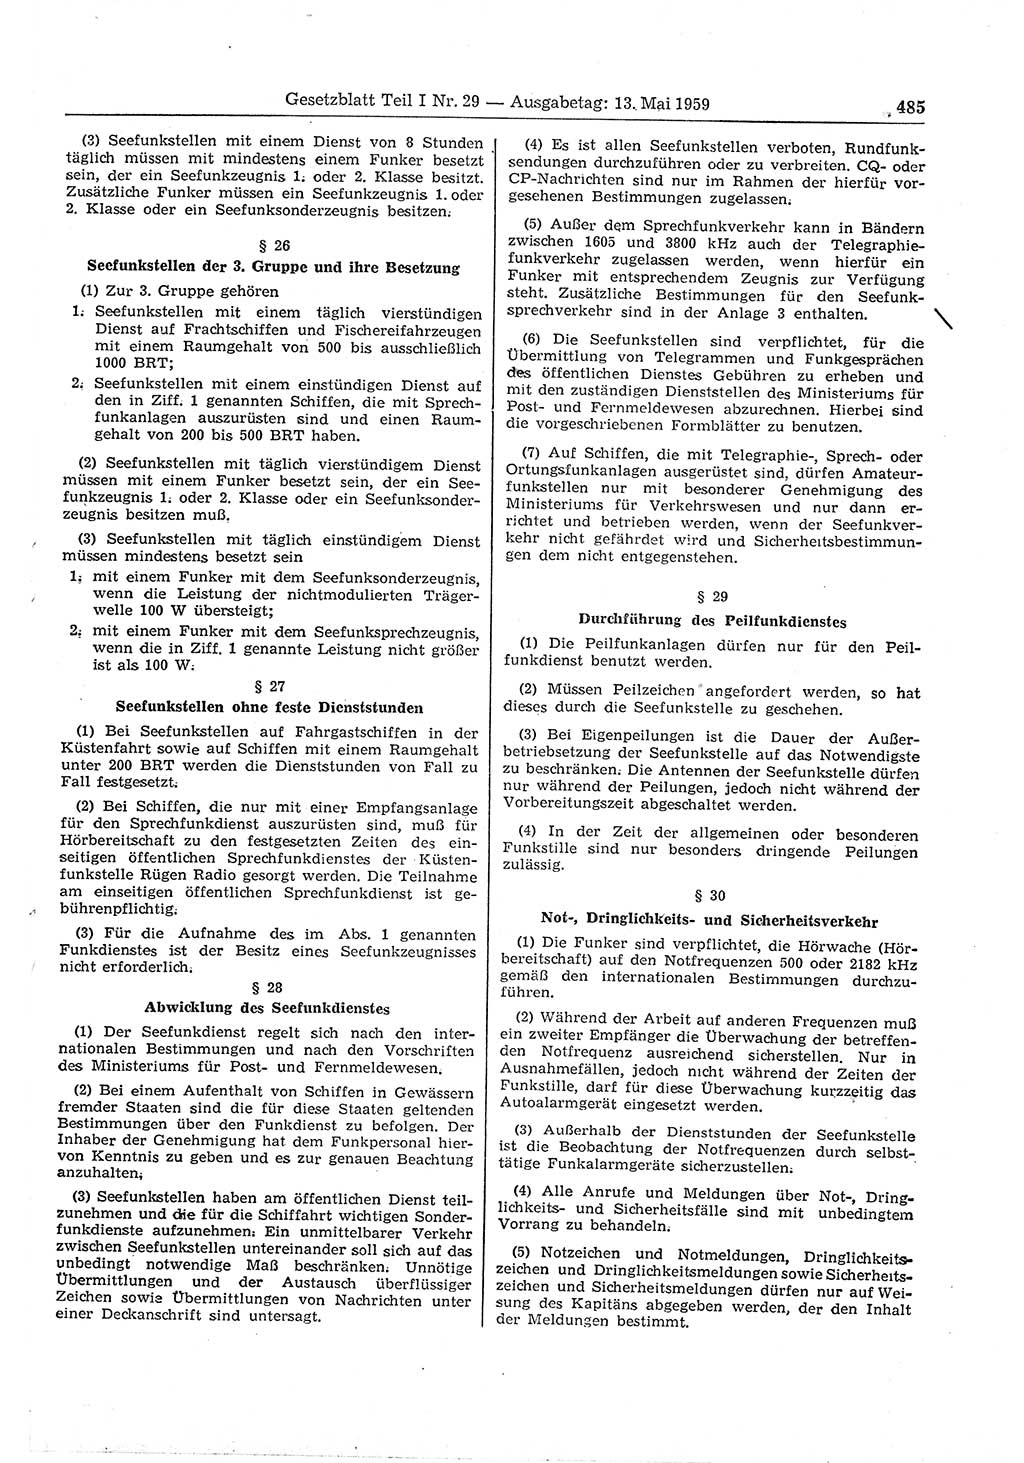 Gesetzblatt (GBl.) der Deutschen Demokratischen Republik (DDR) Teil Ⅰ 1959, Seite 485 (GBl. DDR Ⅰ 1959, S. 485)